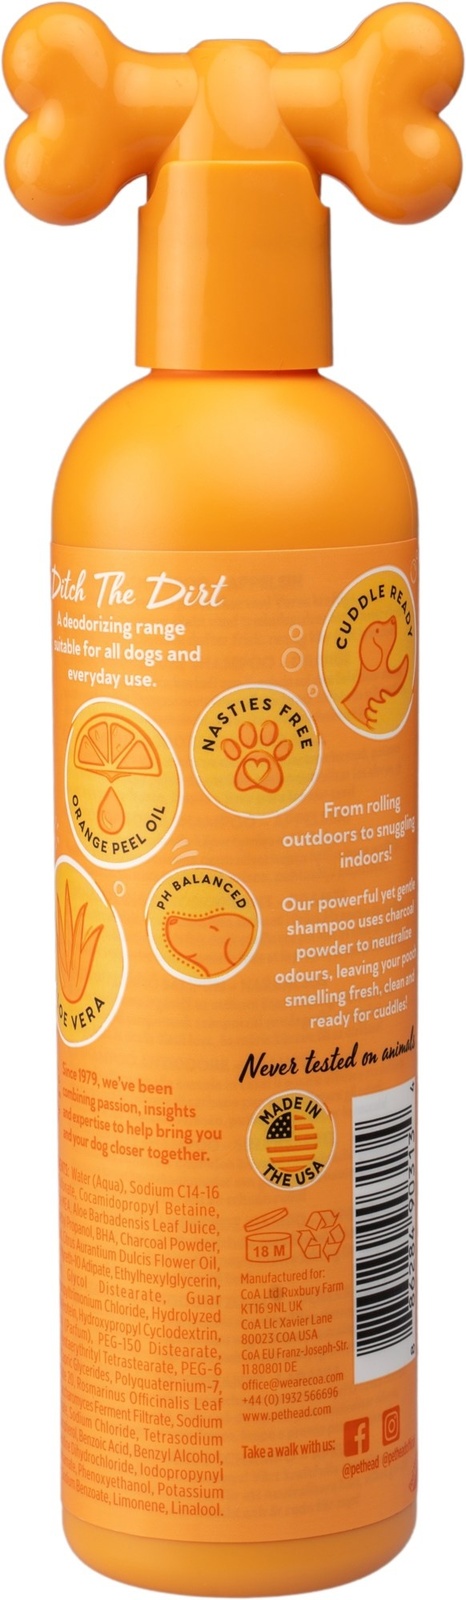 Pet Head шампунь дезодорирующий "Грязный разговор" с ароматом апельсина (300 мл) 